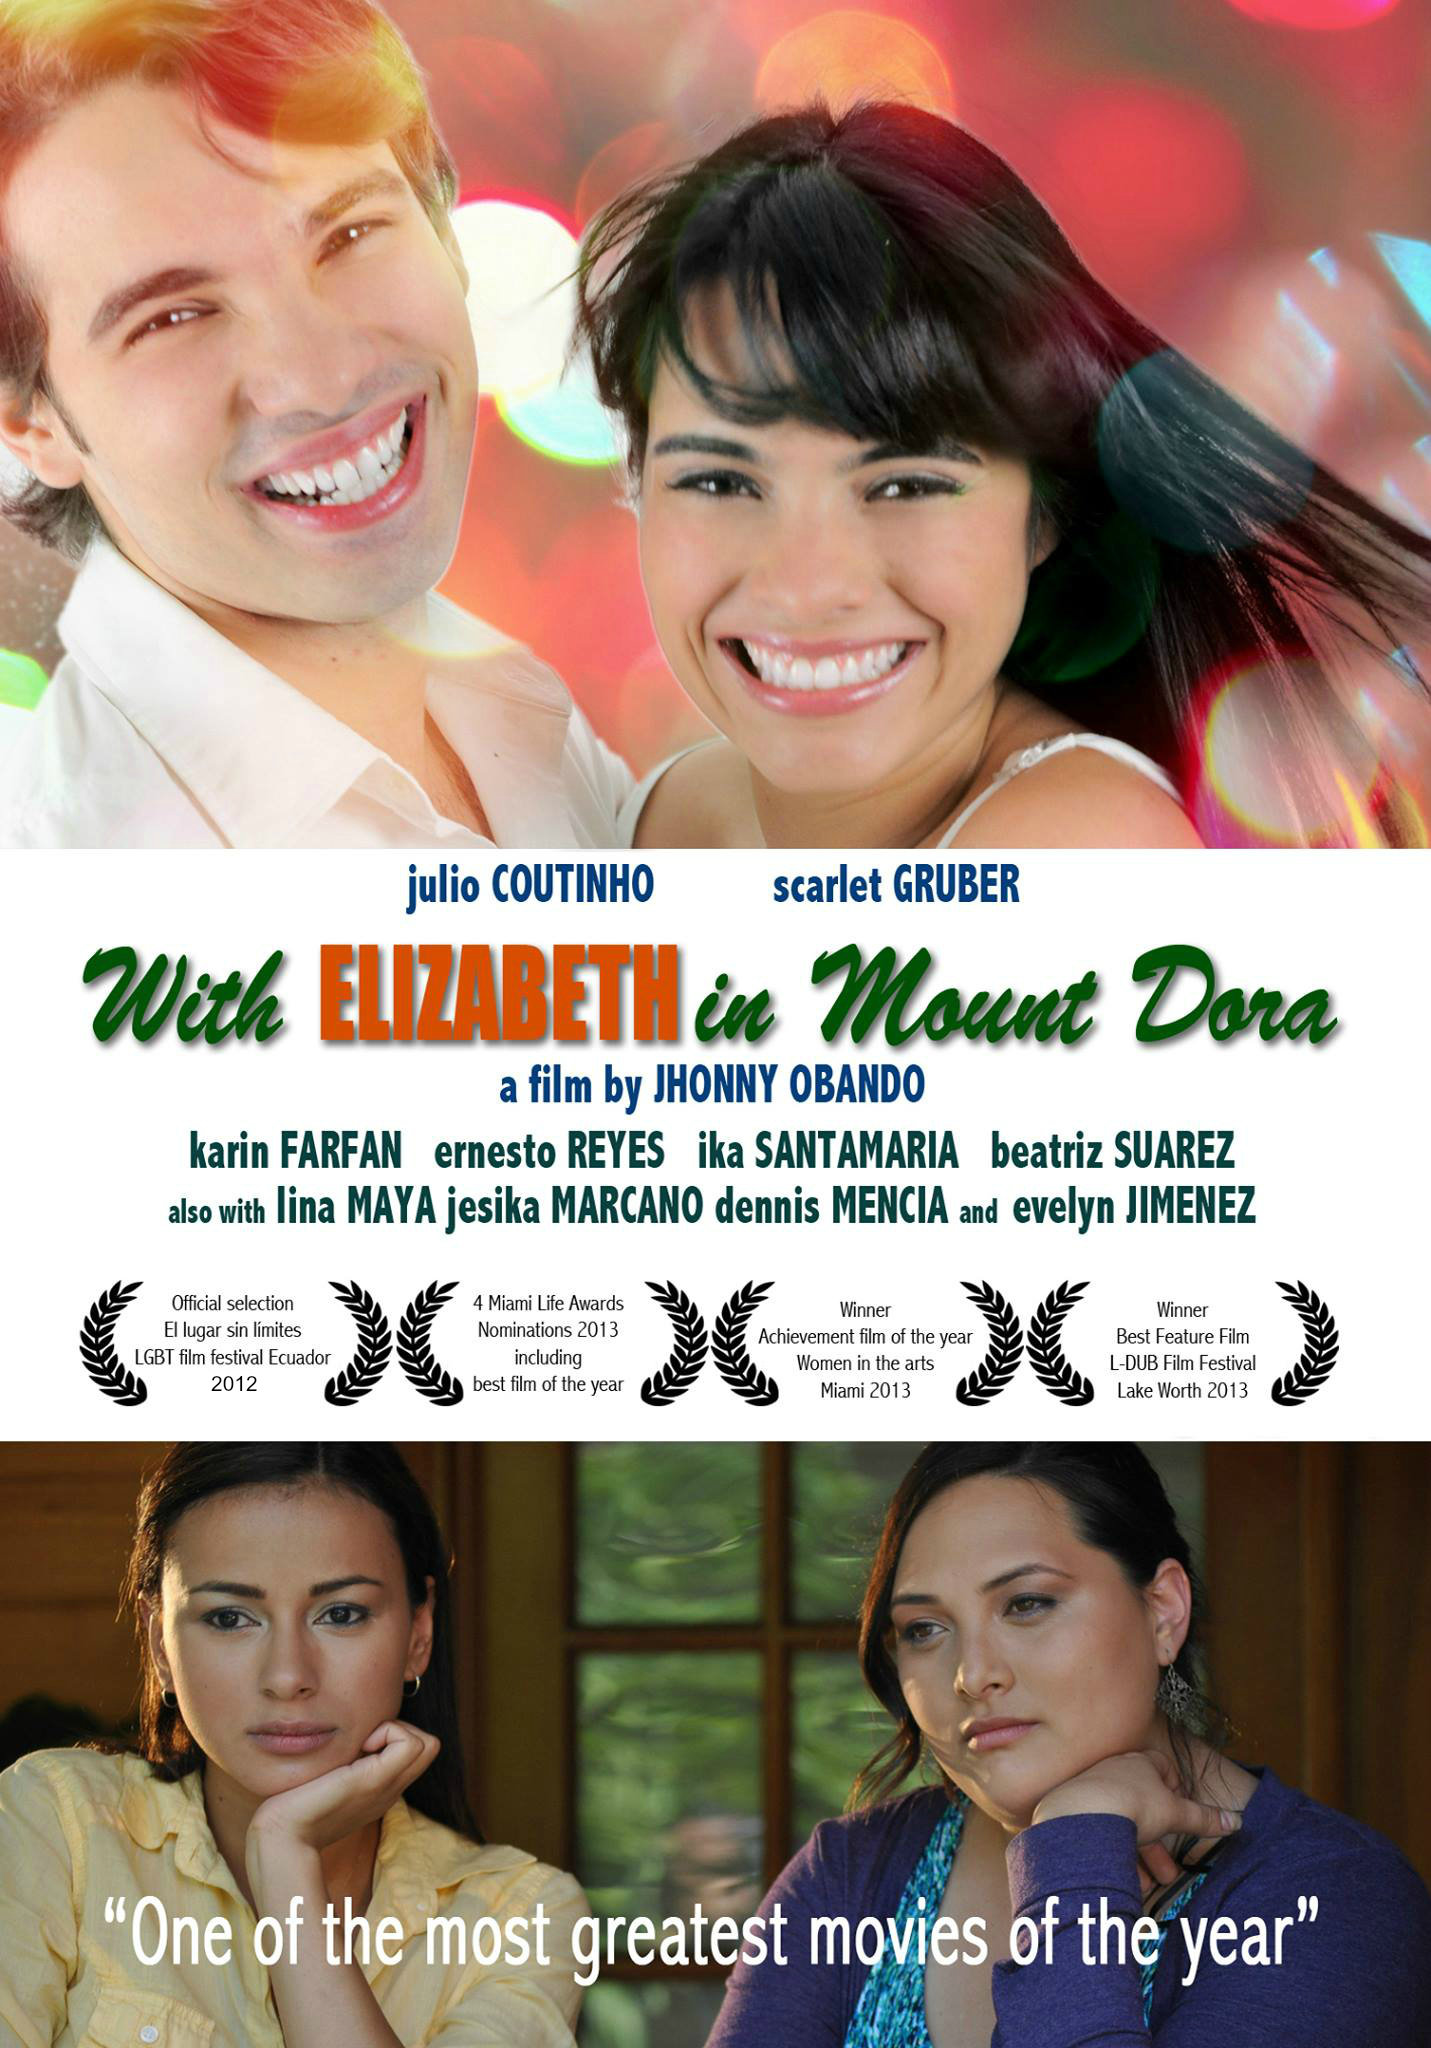 Paola Espinosa, Jhonny Obando, Karin Farfan, Julio Coutinho and Scarlet Gruber in Con Elizabeth en Mount Dora (2012)